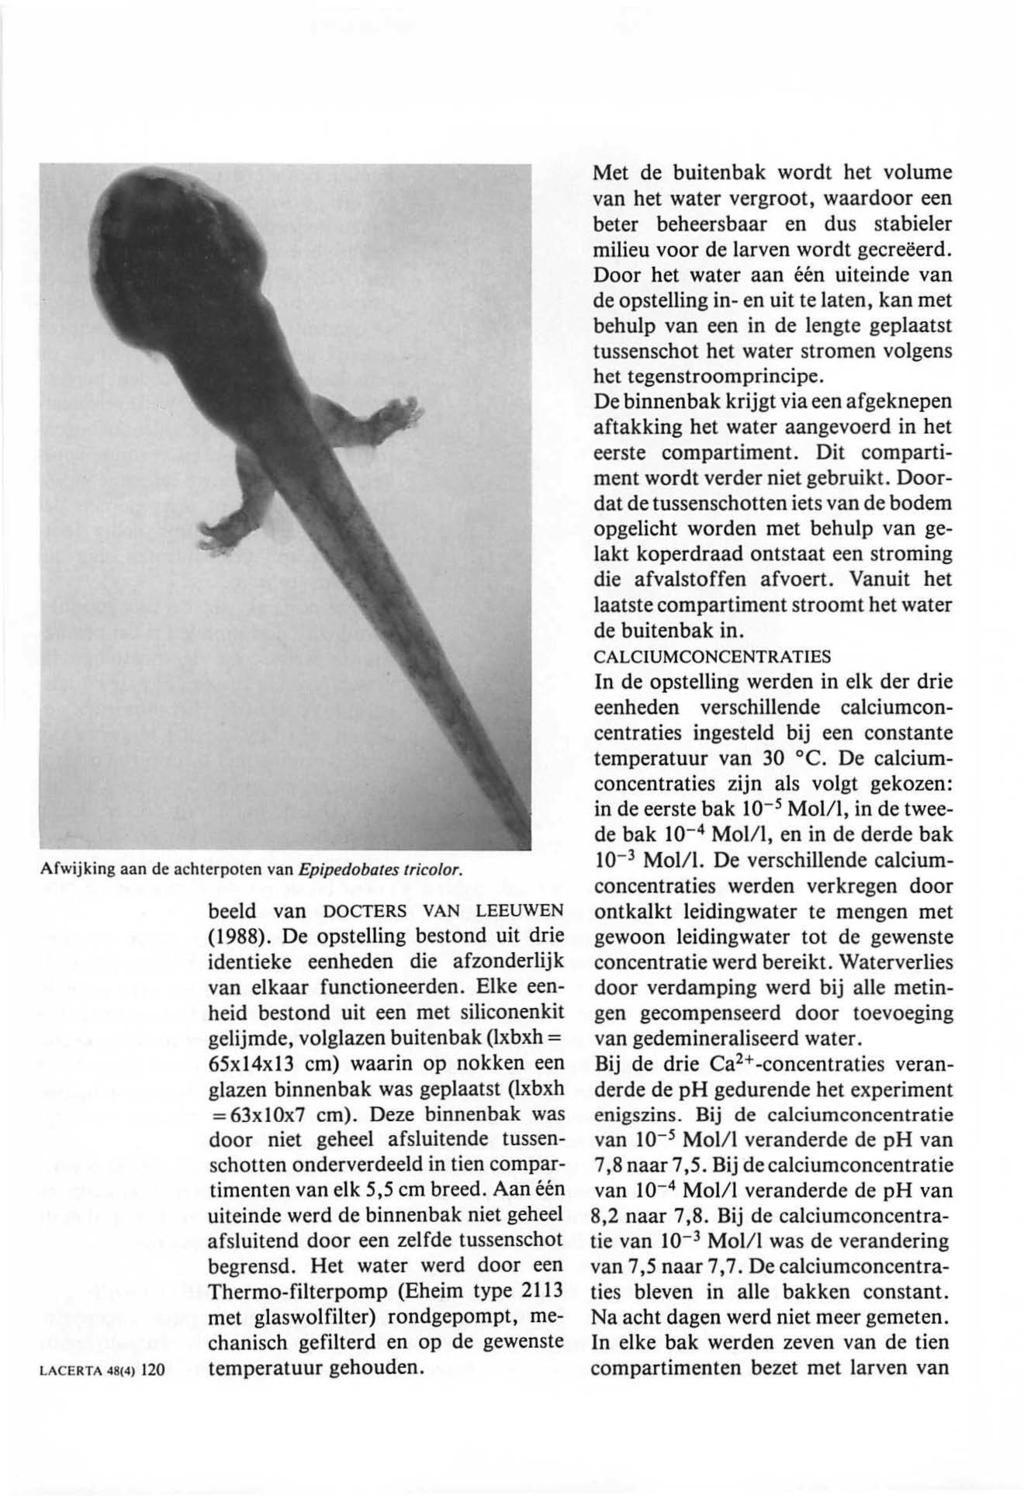 Afwijking aan de achterpoten van Epipedobates tricolor. LACERTA 48(4) 120 beeld van DOCTERS VAN LEEUWEN (1988).